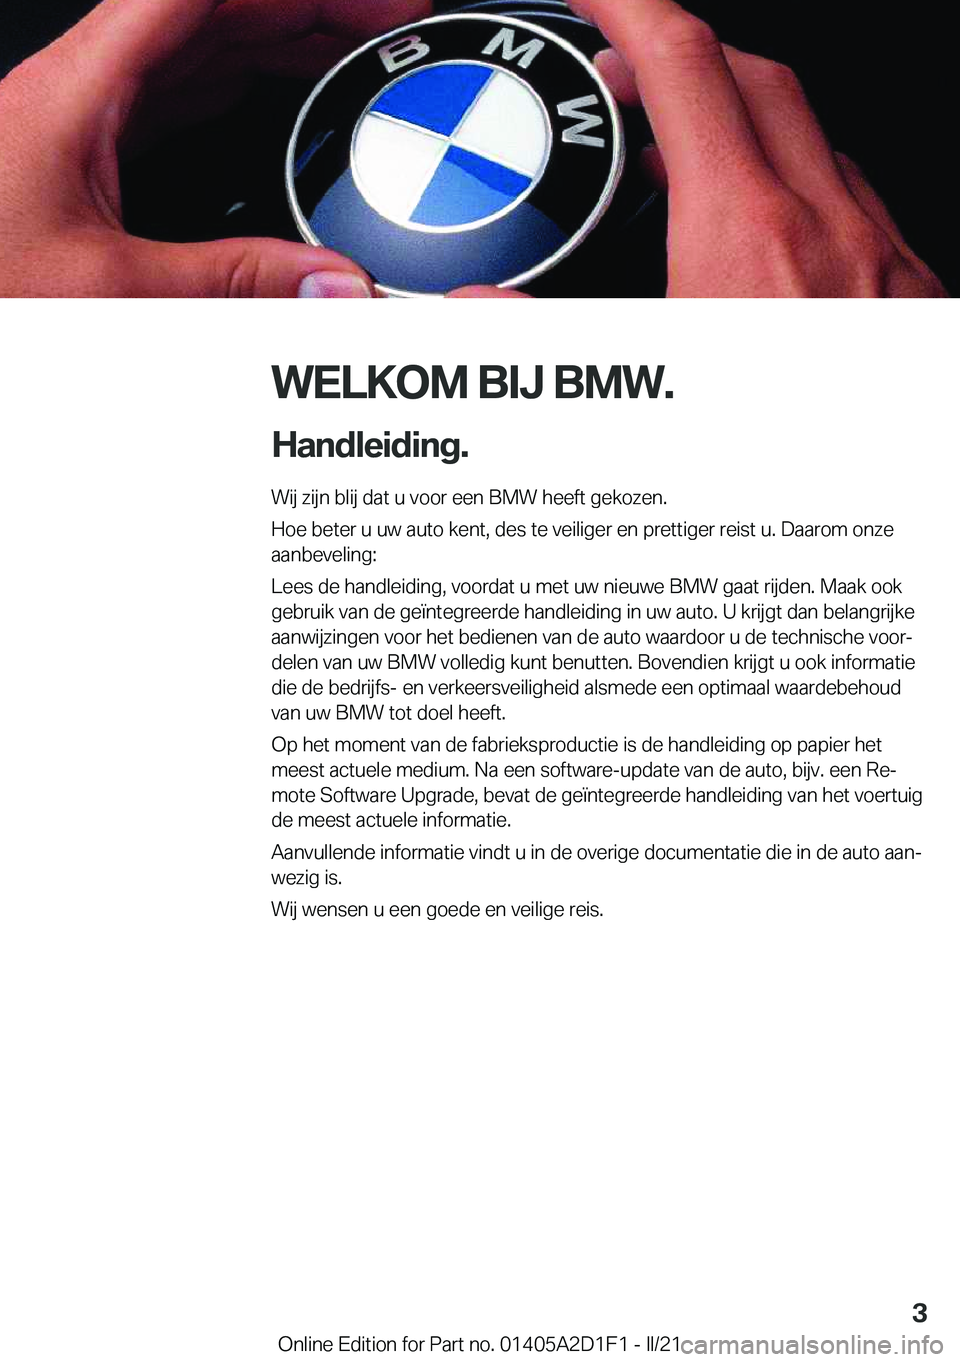 BMW X6 M 2021  Instructieboekjes (in Dutch) �W�E�L�K�O�M��B�I�J��B�M�W�.
�H�a�n�d�l�e�i�d�i�n�g�. �W�i�j��z�i�j�n��b�l�i�j��d�a�t��u��v�o�o�r��e�e�n��B�M�W��h�e�e�f�t��g�e�k�o�z�e�n�.
�H�o�e��b�e�t�e�r��u��u�w��a�u�t�o��k�e�n�t�